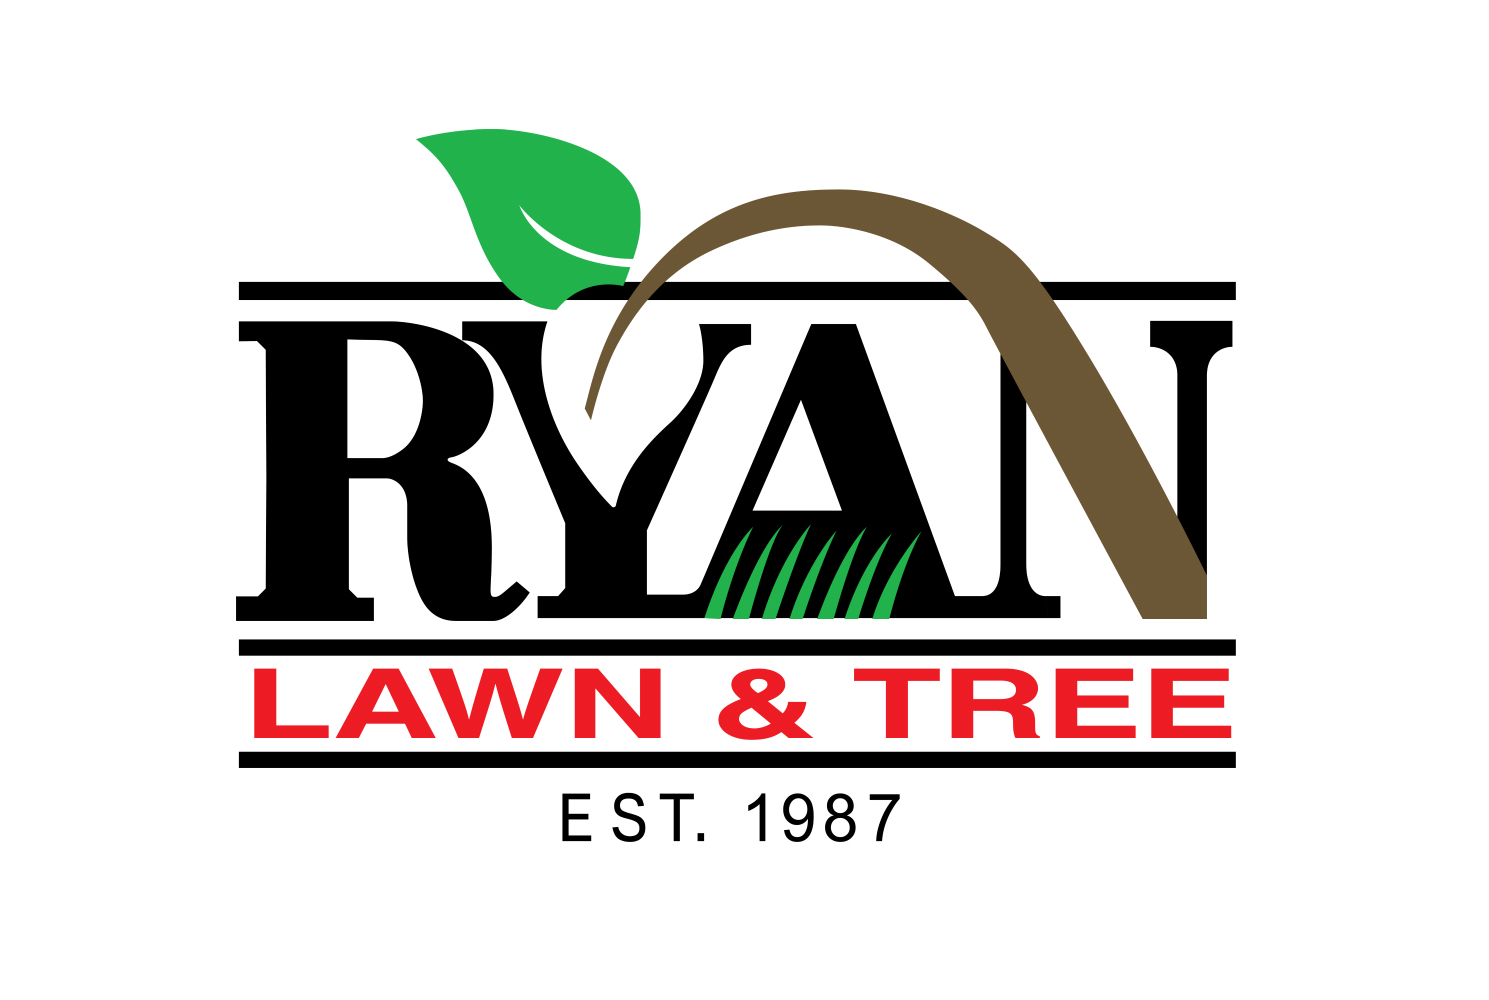 5Ryan Lawn & Tree